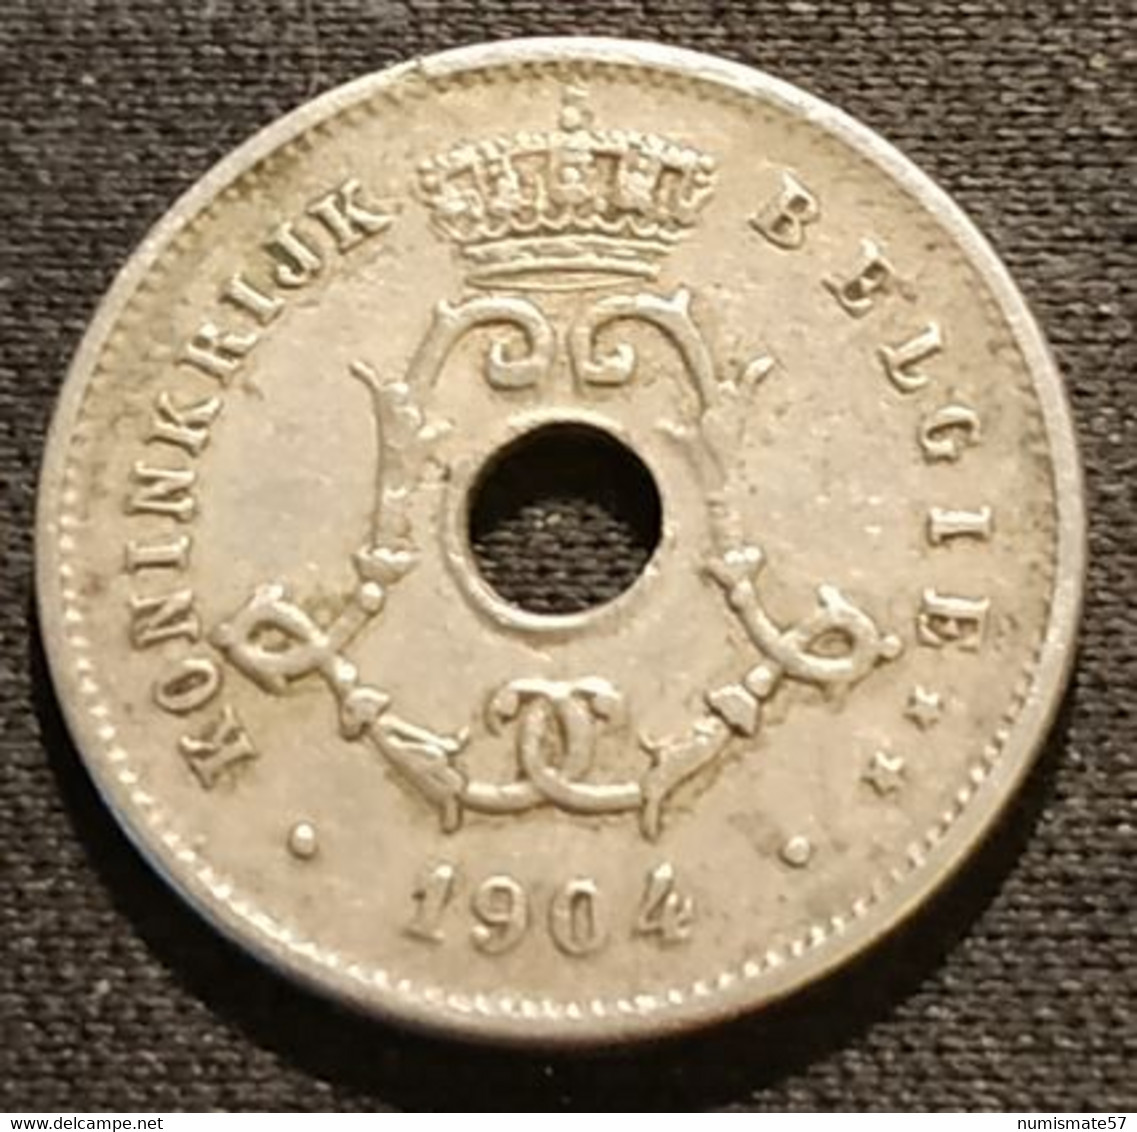 BELGIQUE - BELGIUM - 5 CENTIMES 1904 - Légende NL - Léopold II - Type Michaux - KM 55 - 5 Centimes